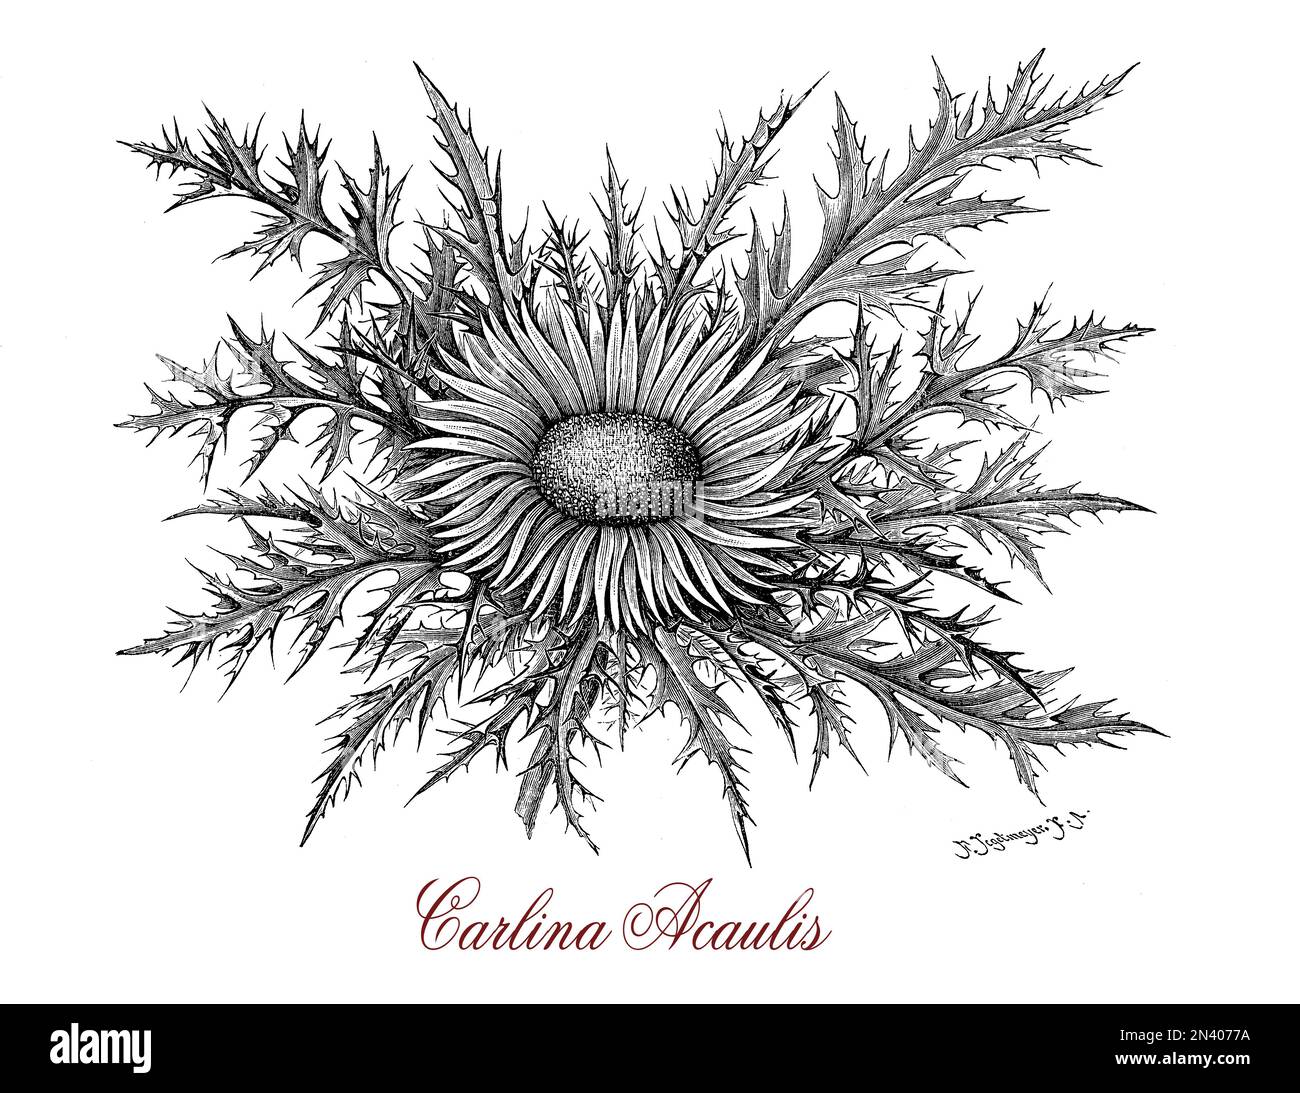 Gravure botanique vintage de Carlina acaulis, la floraison des plantes comestibles de la région alpine, utilisé pour les huiles essentielles en phytothérapie Banque D'Images